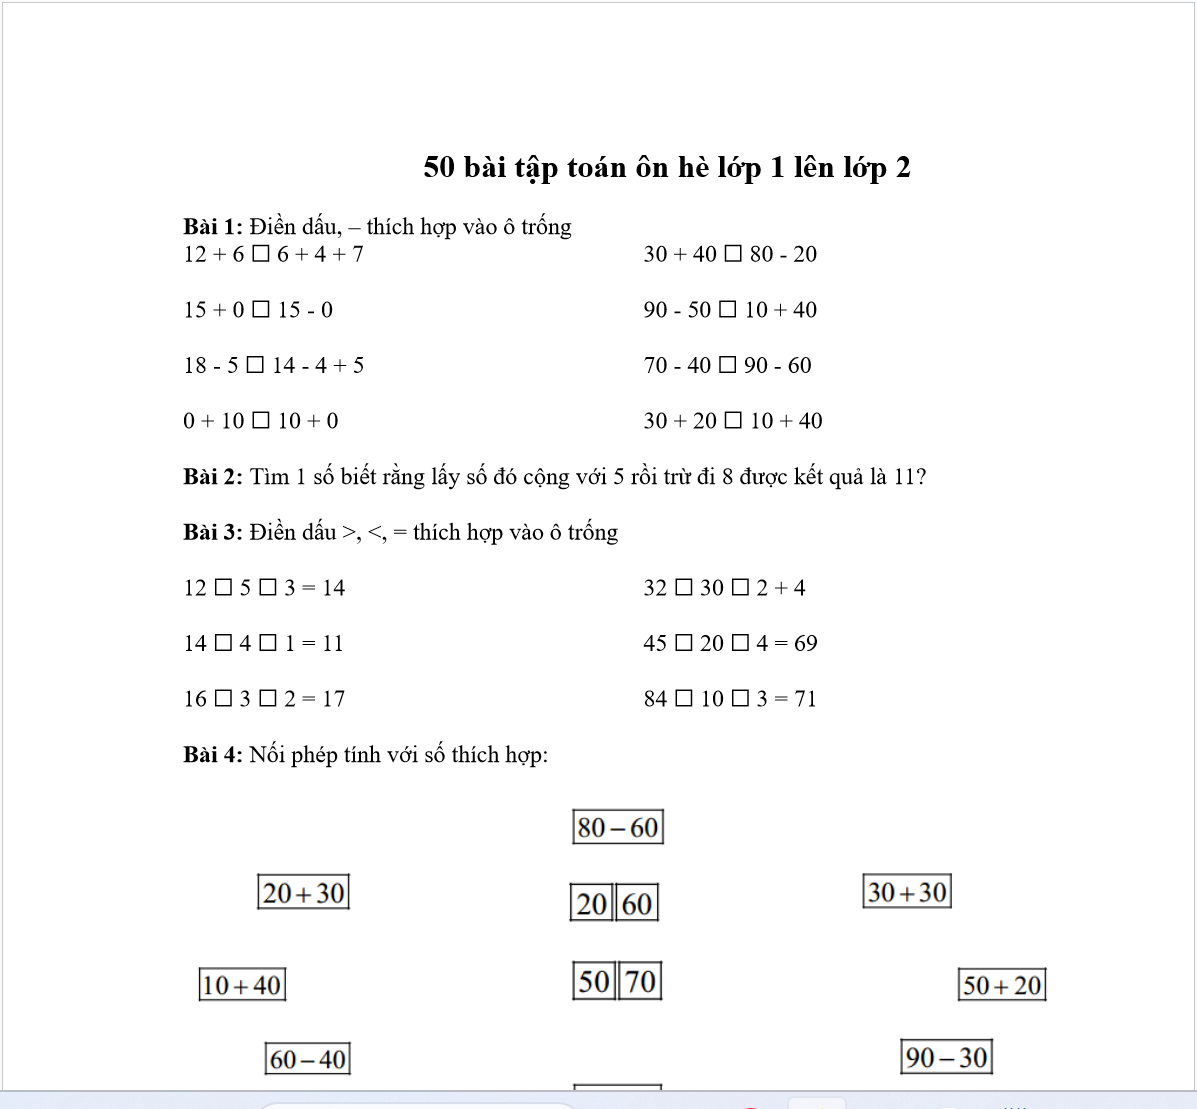 BỘ 50 Bài tập toán ôn hè lớp 1 lên lớp 2 CÓ ĐÁP ÁN LINK DRIVE